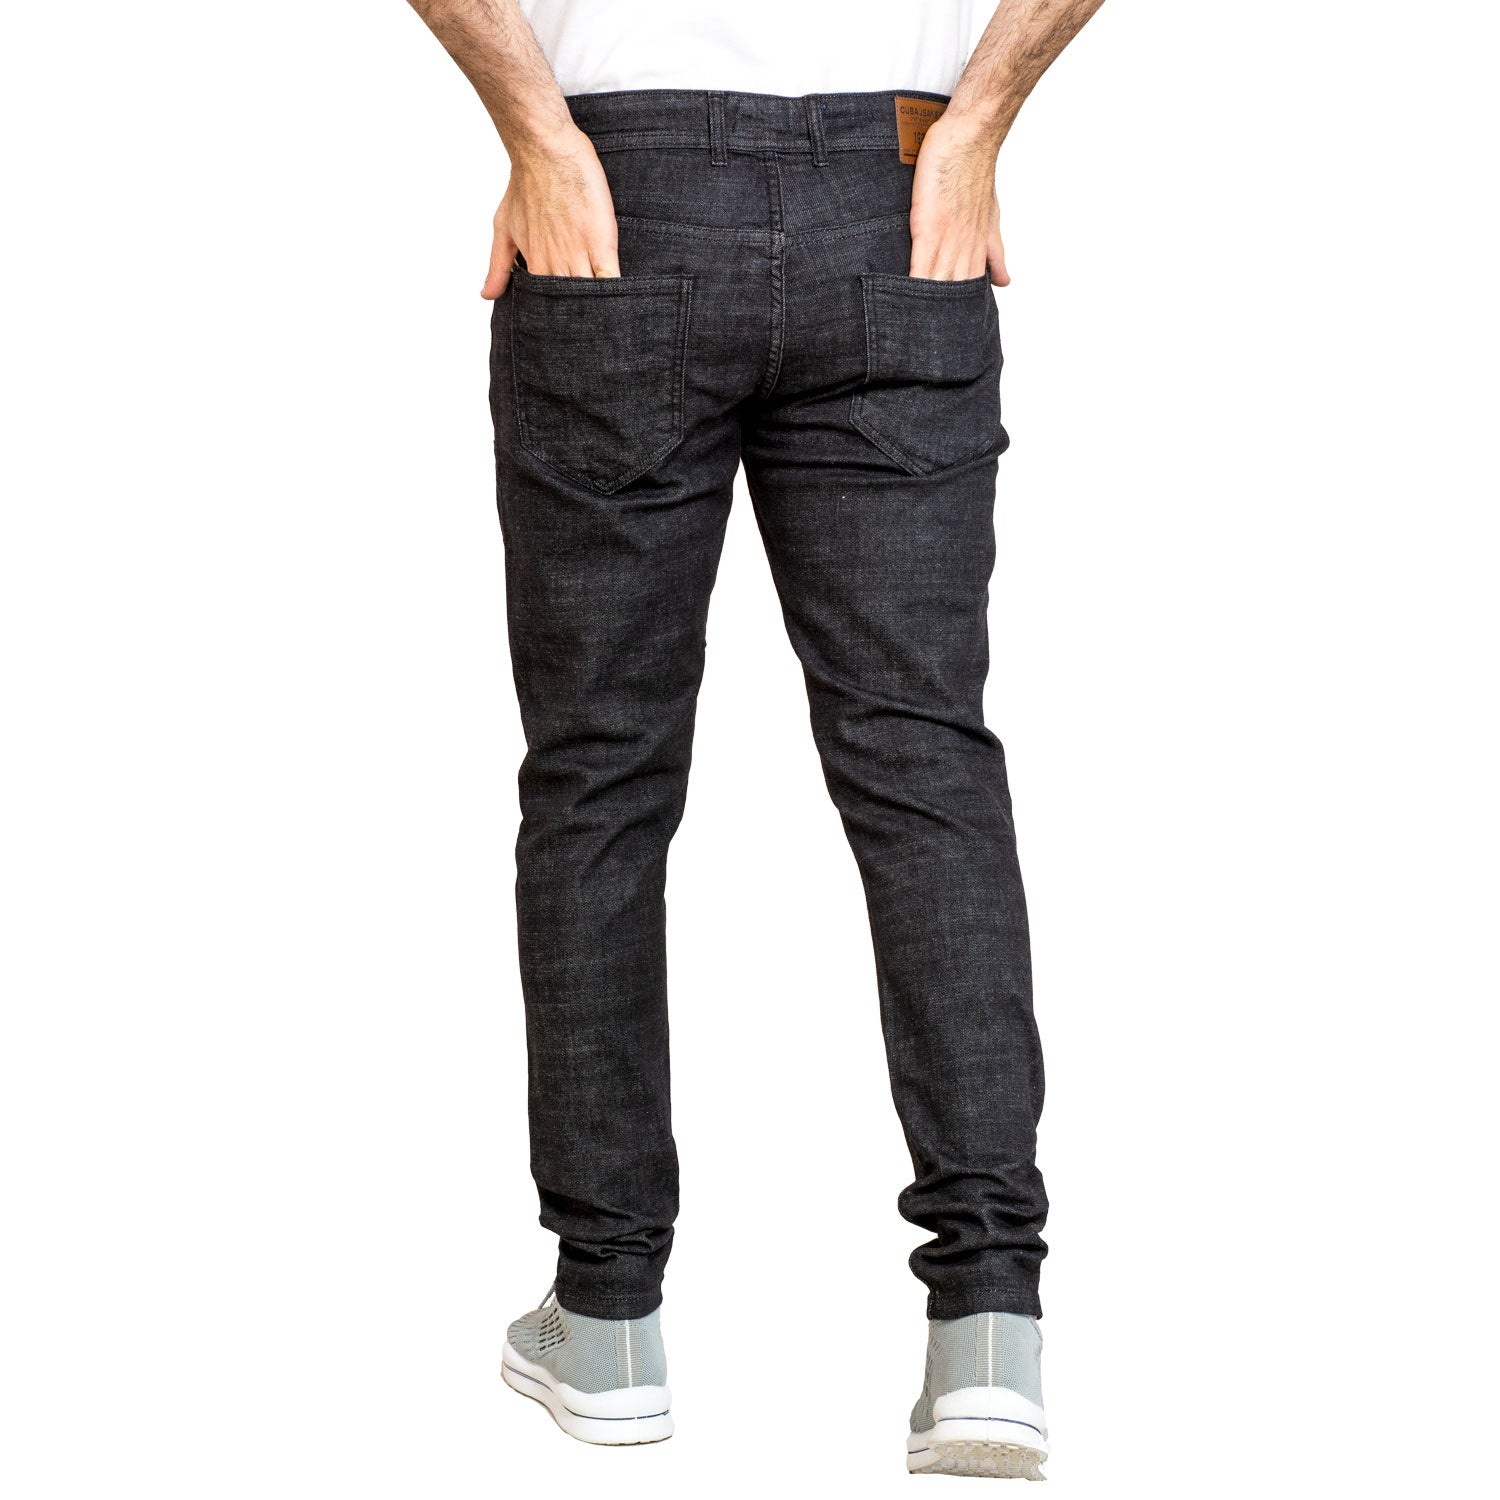 24GM-9-1-233482-1-بنطلون جينز خام أسود - فولكان Jeans-Pant, بنطلون, بنطلون جينز رجالي, Pukkastyle